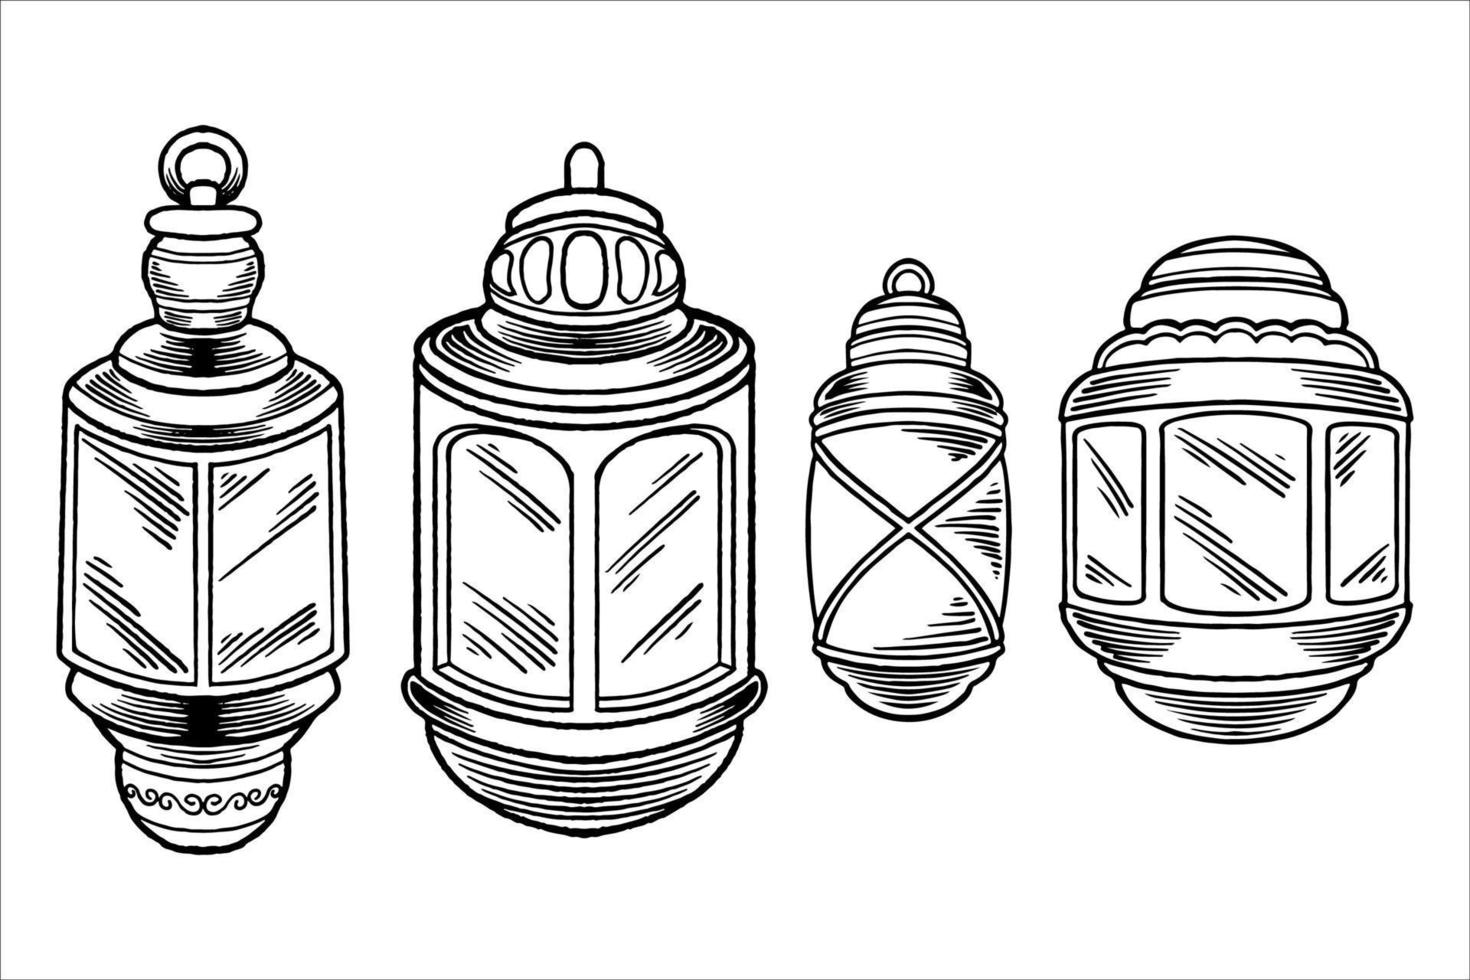 esboço desenhado à mão de lanternas como elemento de ornamentos islâmicos vetor